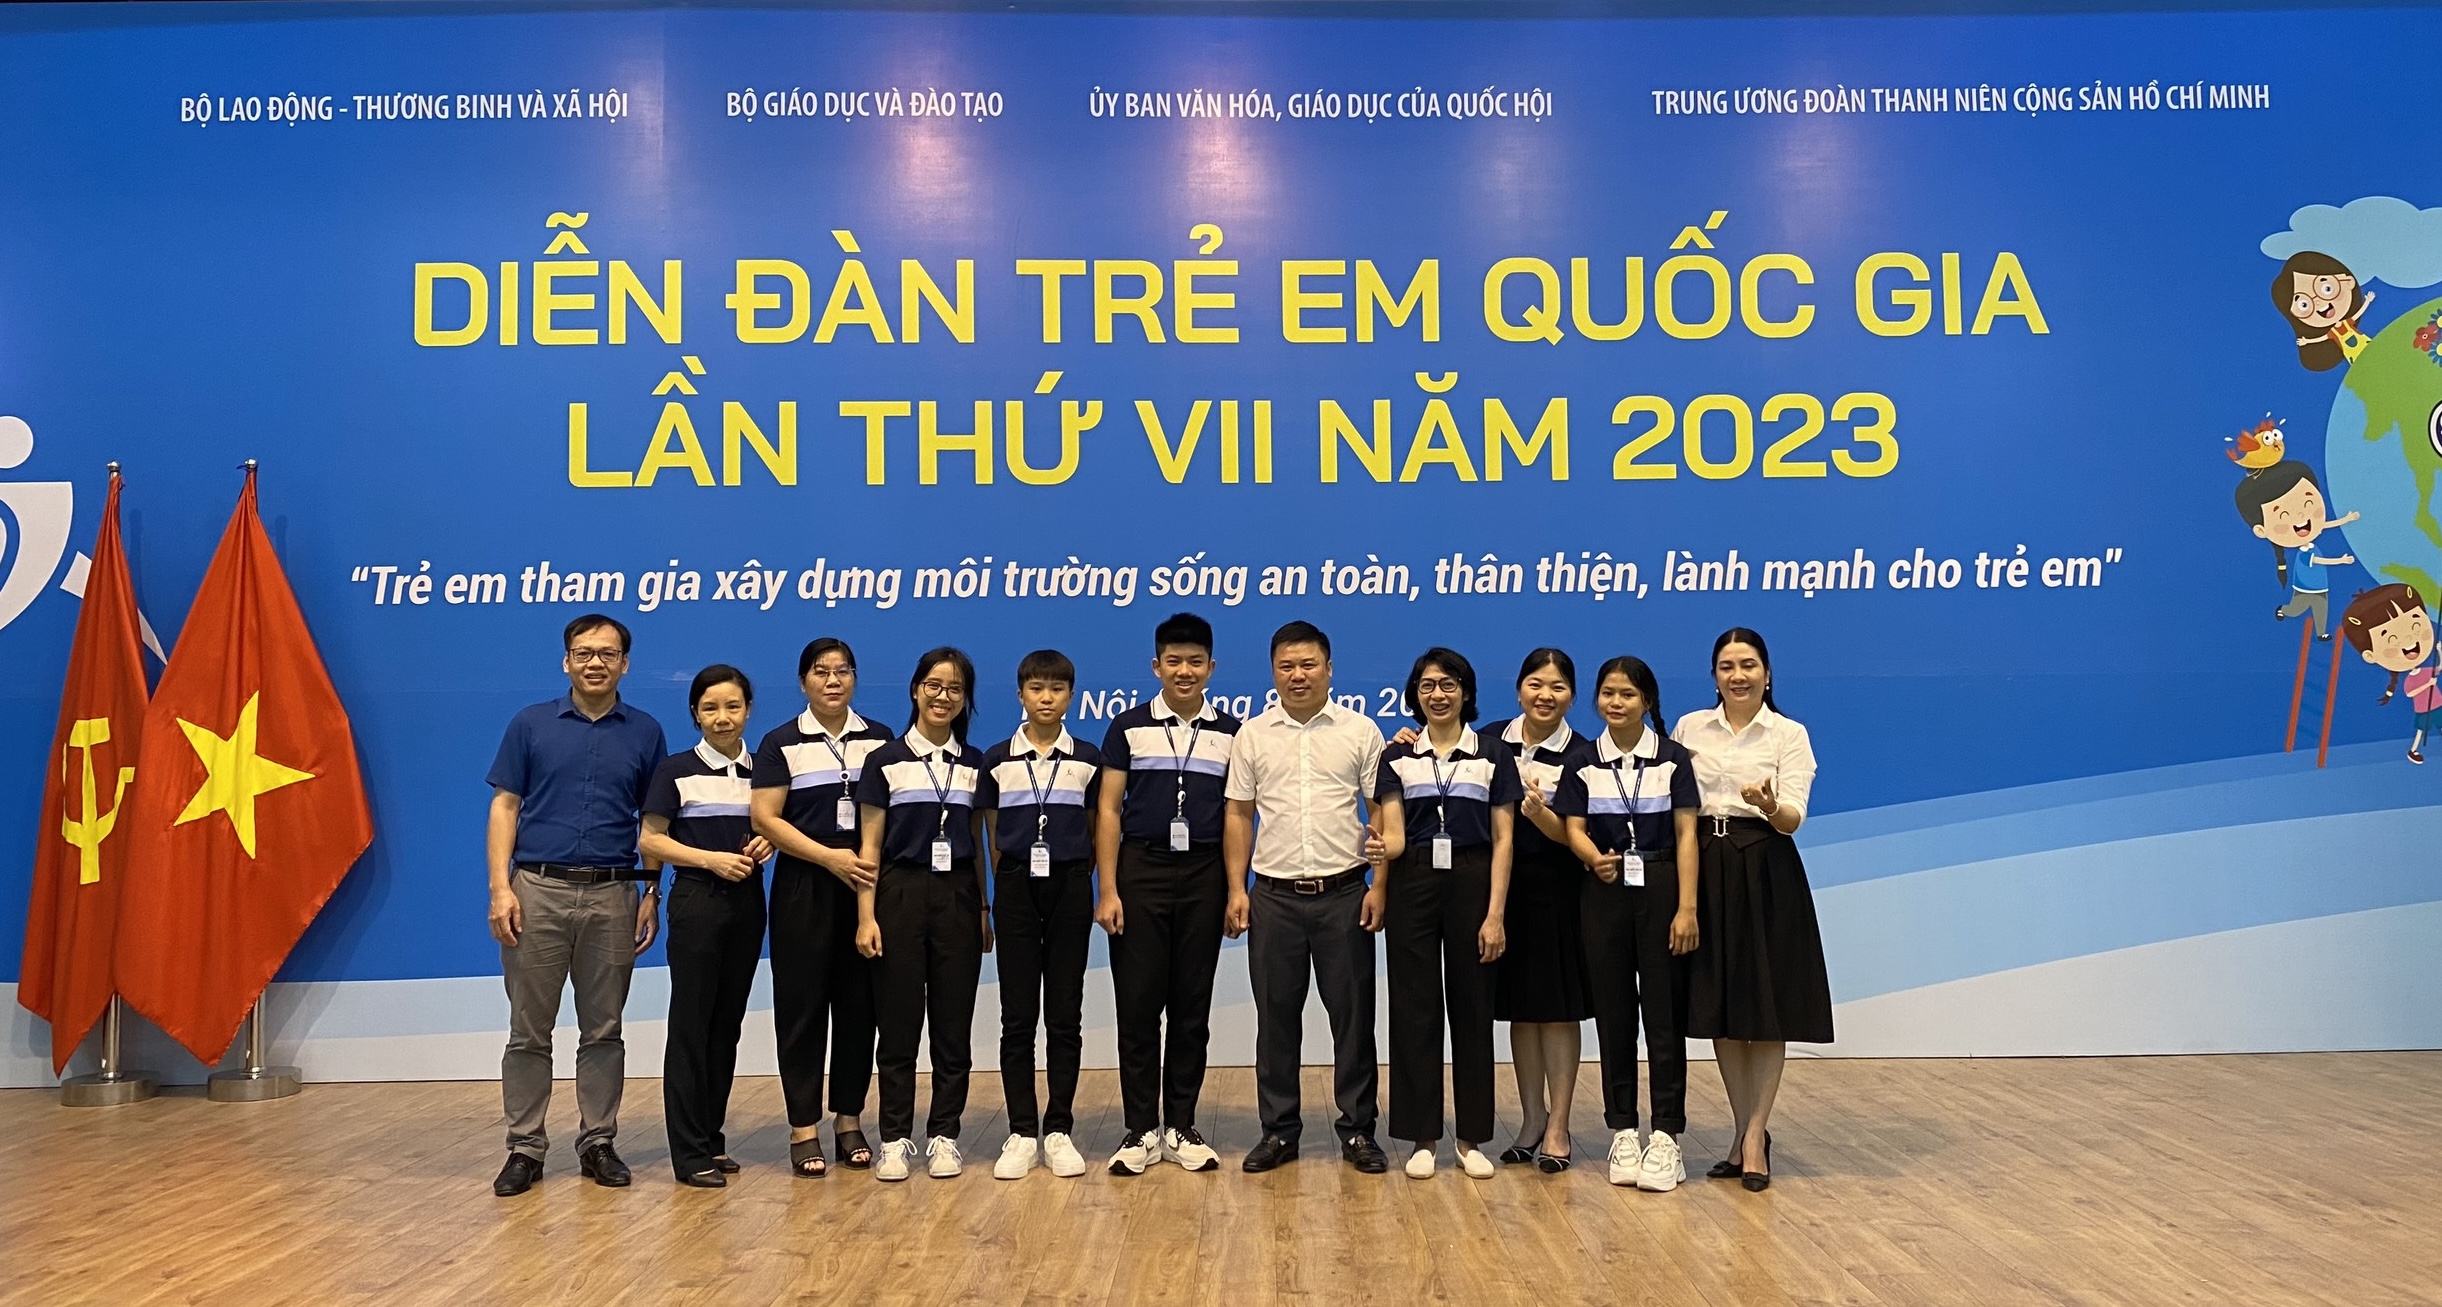 Quảng Bình tham gia Diễn đàn trẻ em quốc gia năm 2023